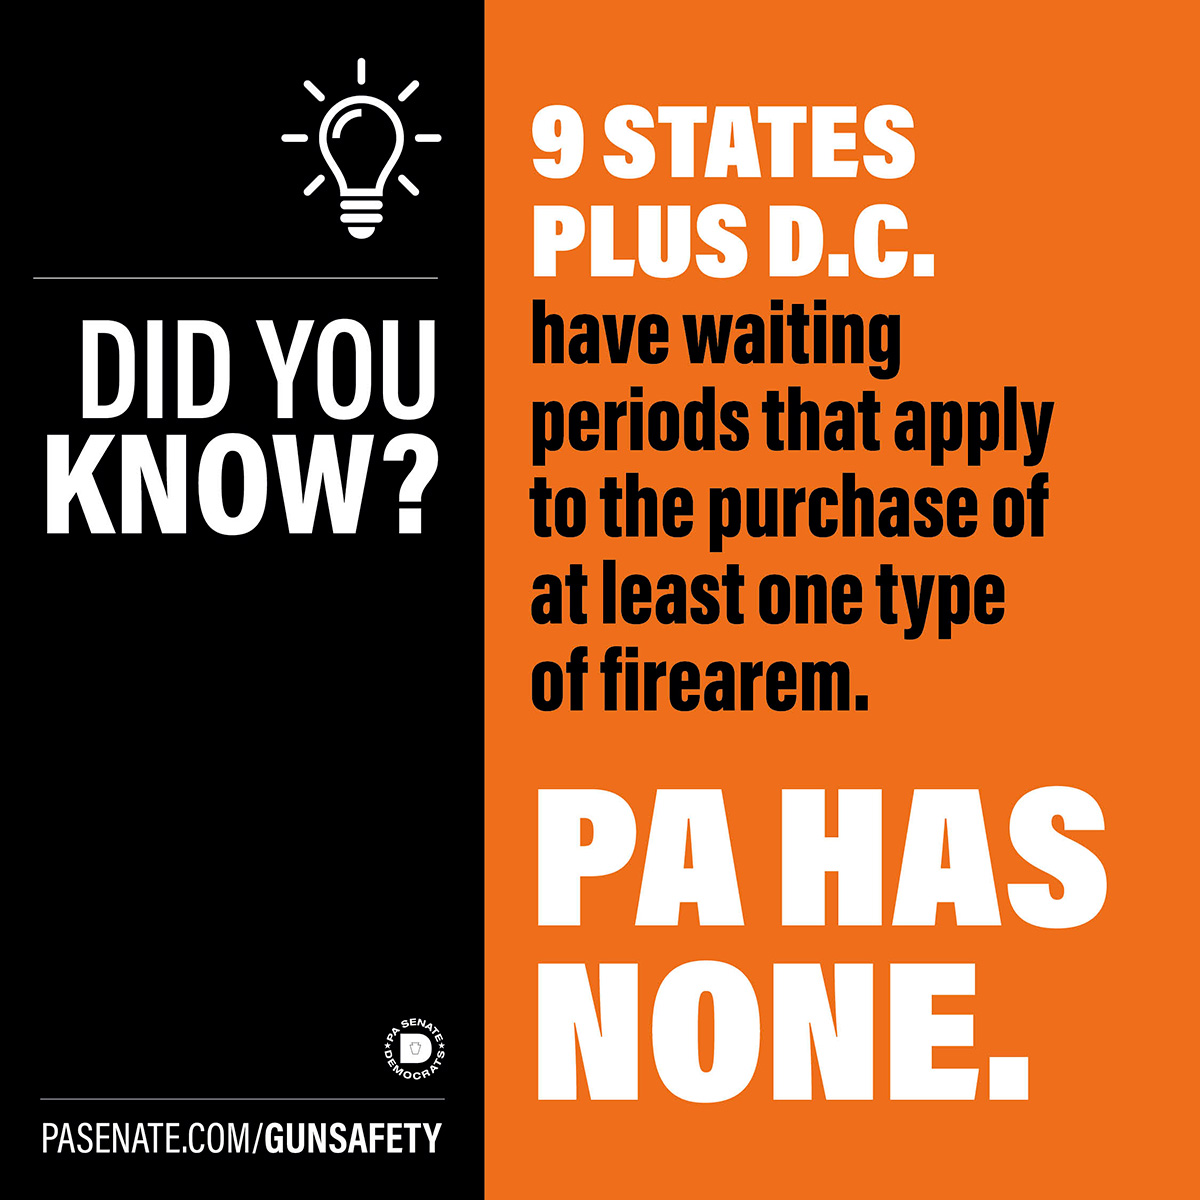 ¿Lo sabía? 9 estados más D.C. tienen periodos de carencia que se aplican a la compra de al menos un tipo de arma de fuego.